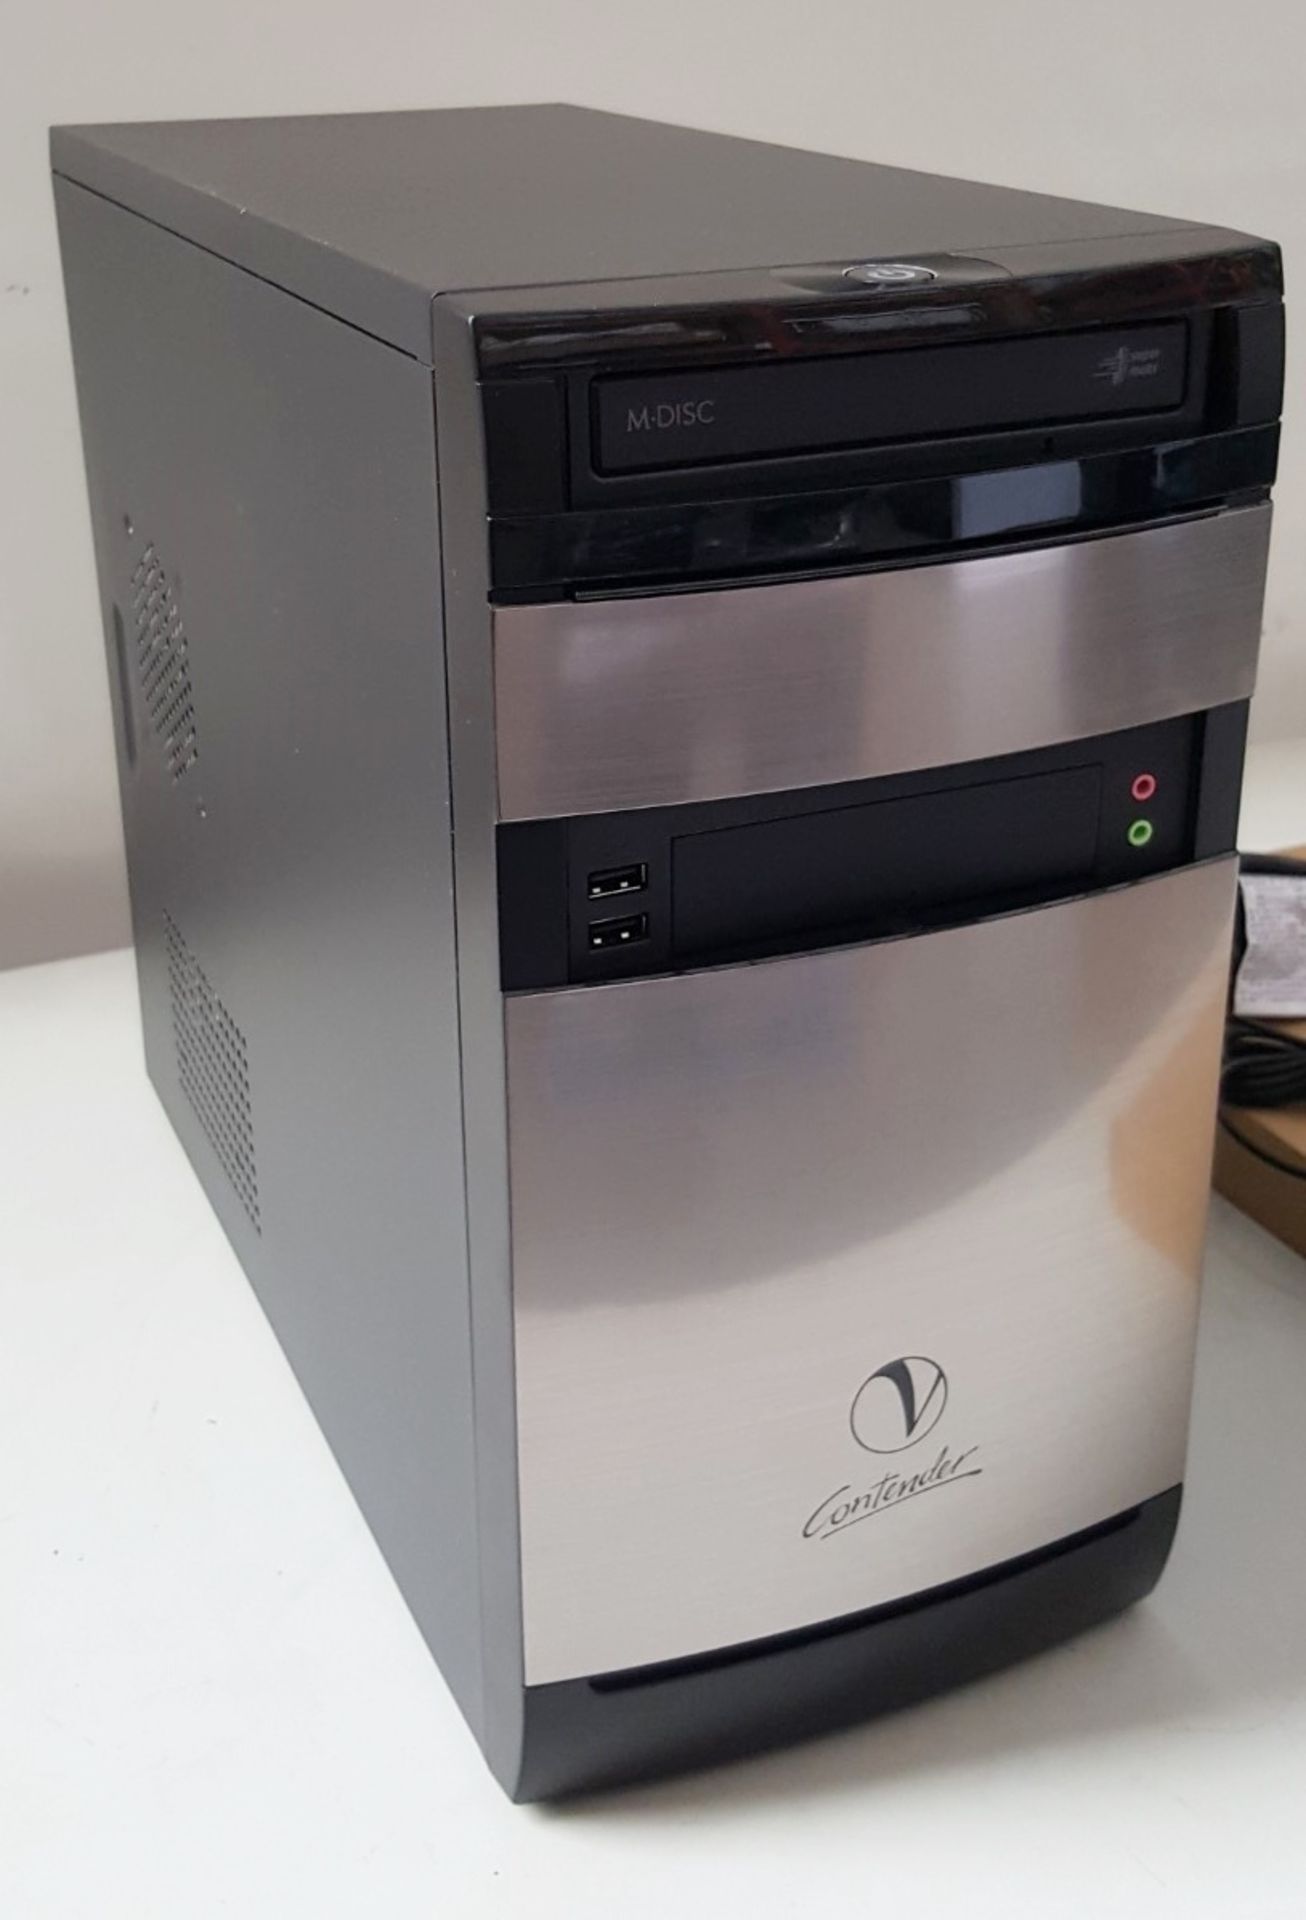 1 x New In Box Viglen Contender Desktop PC - Ref LD424 - Image 3 of 8